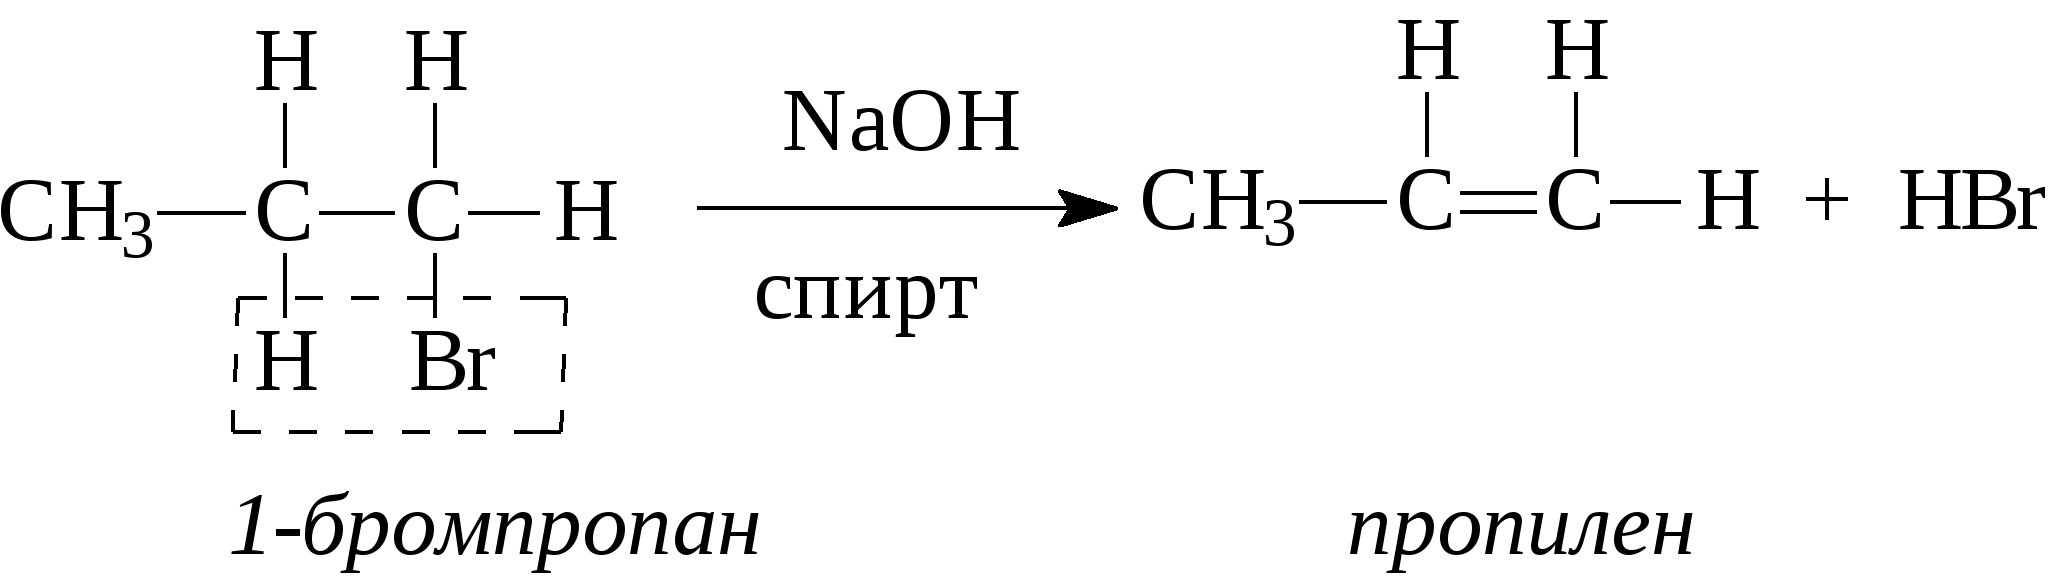 Бромпропан NAOH спиртовой. Получение этилена из этанола. Получение этилена из этилового спирта. Из этилена в этанол. Реакция получения этилена из спирта